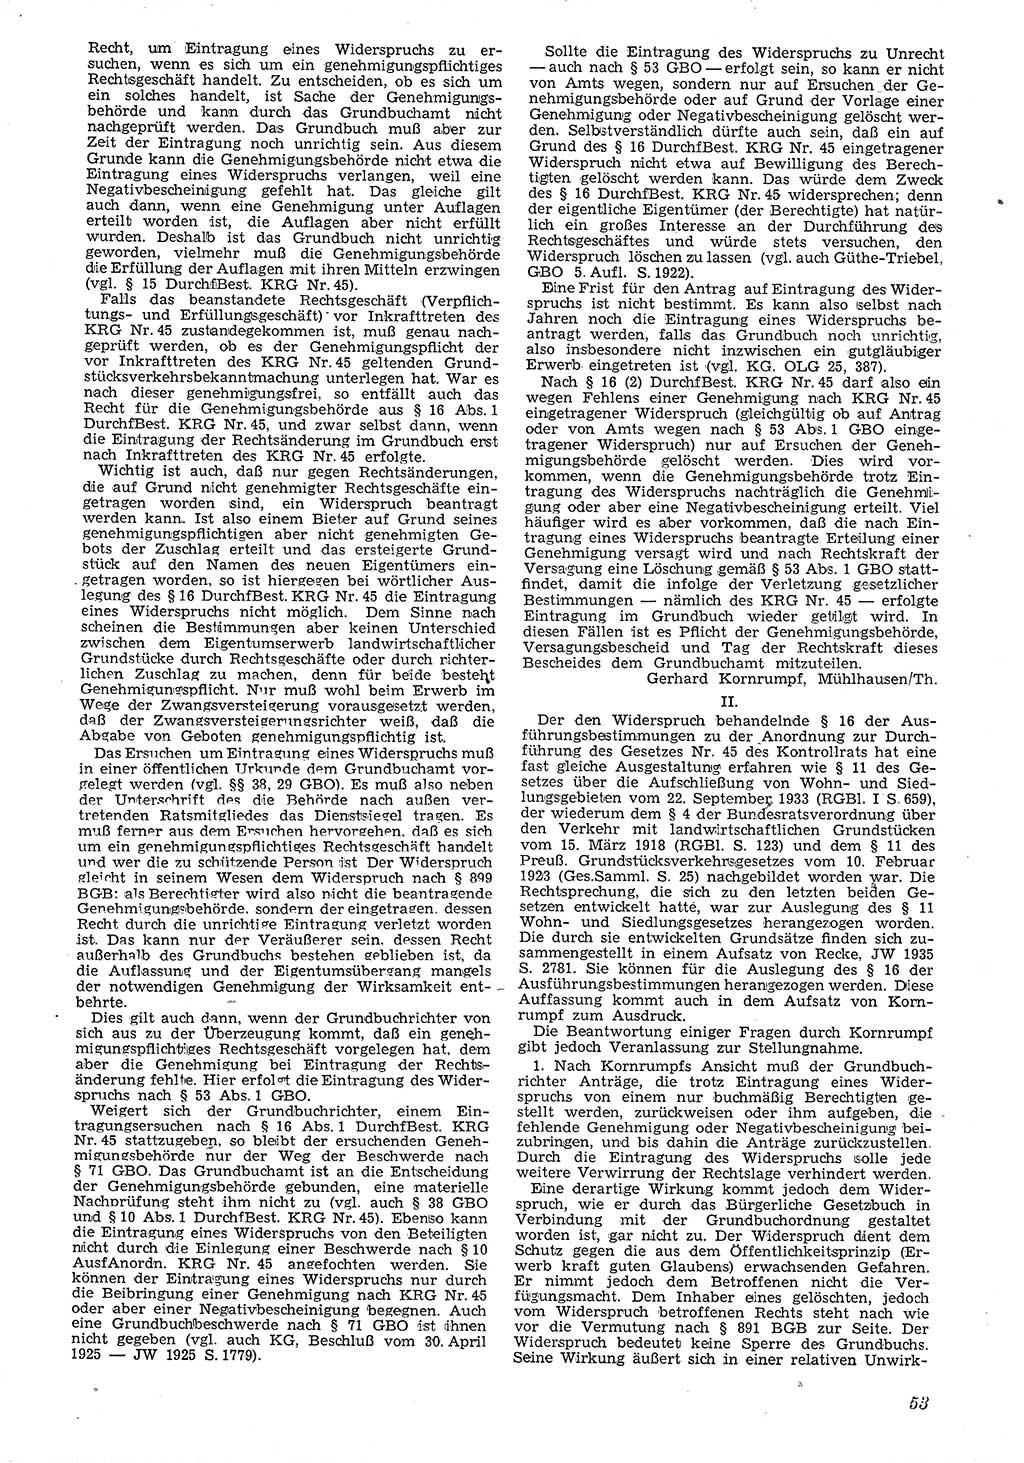 Neue Justiz (NJ), Zeitschrift für Recht und Rechtswissenschaft [Deutsche Demokratische Republik (DDR)], 4. Jahrgang 1950, Seite 53 (NJ DDR 1950, S. 53)